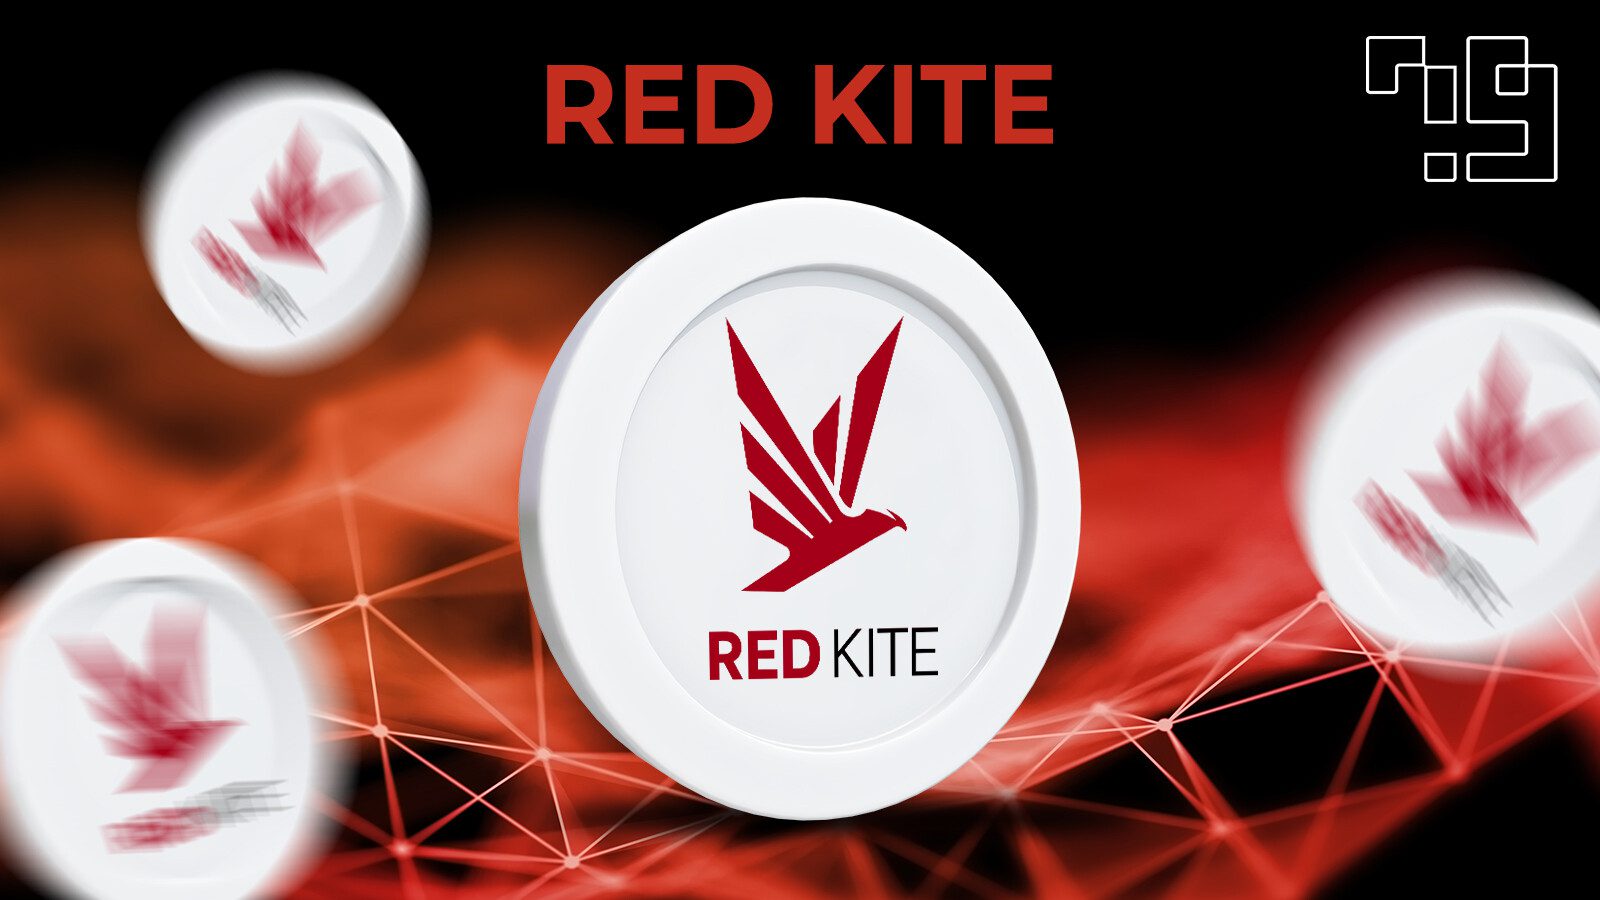 Red Kite là gì? Tổng hợp về đồng PKF Token chủ đạo